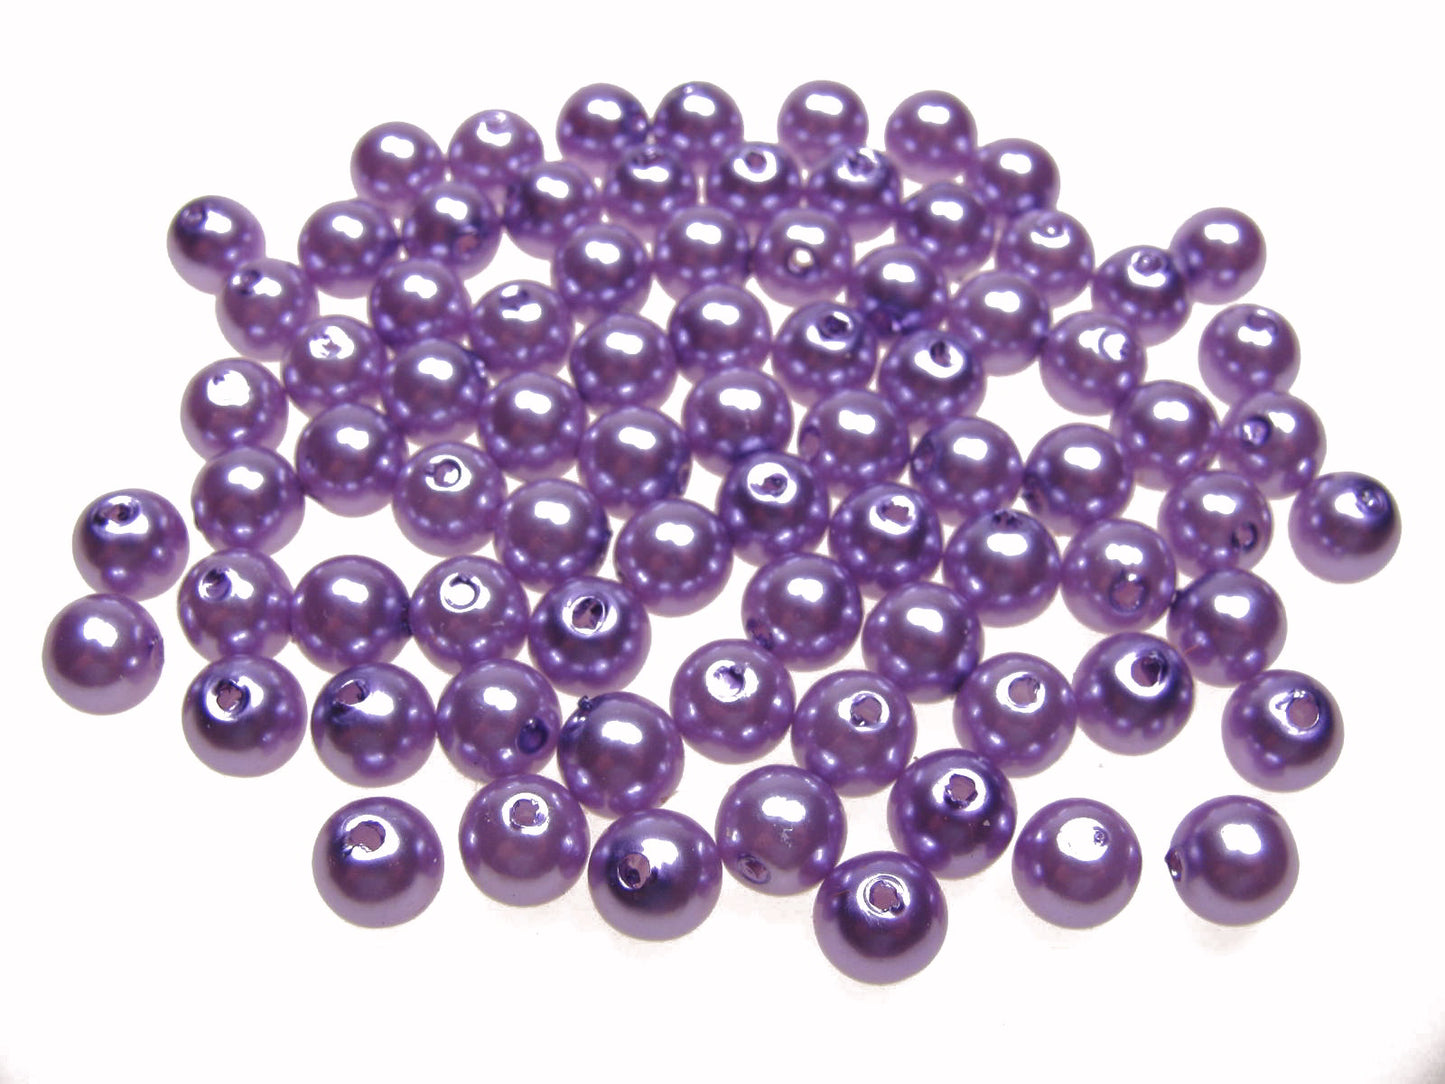 80 Wachsperlen lila hell 8mm, Perlen basteln verzieren, Kunststoffperlen